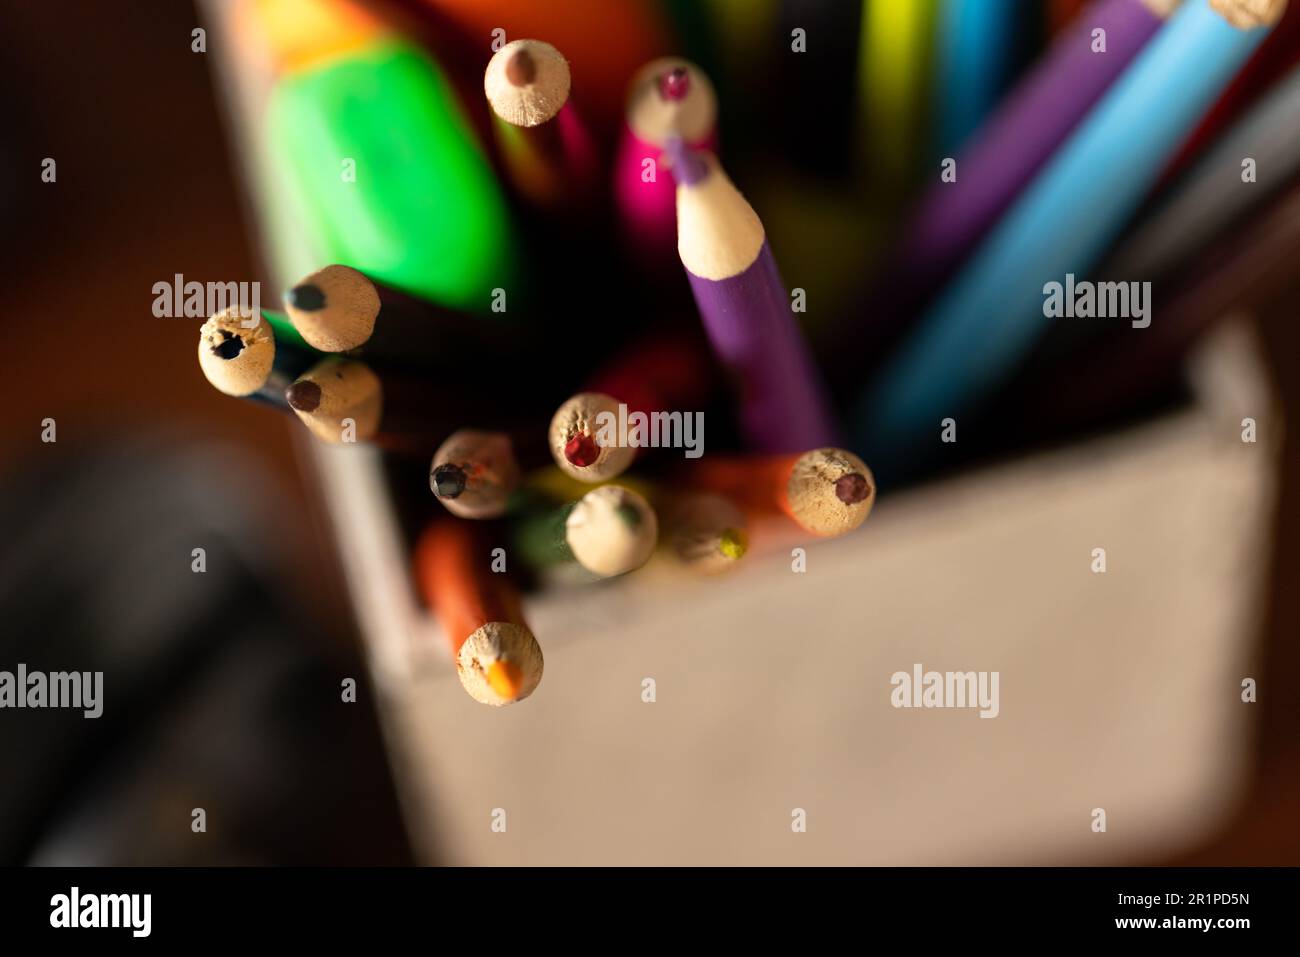 Farbige Stifte und Stifte im Topf auf dem Schreibtisch zu Hause, selektive Fokussierung Stockfoto